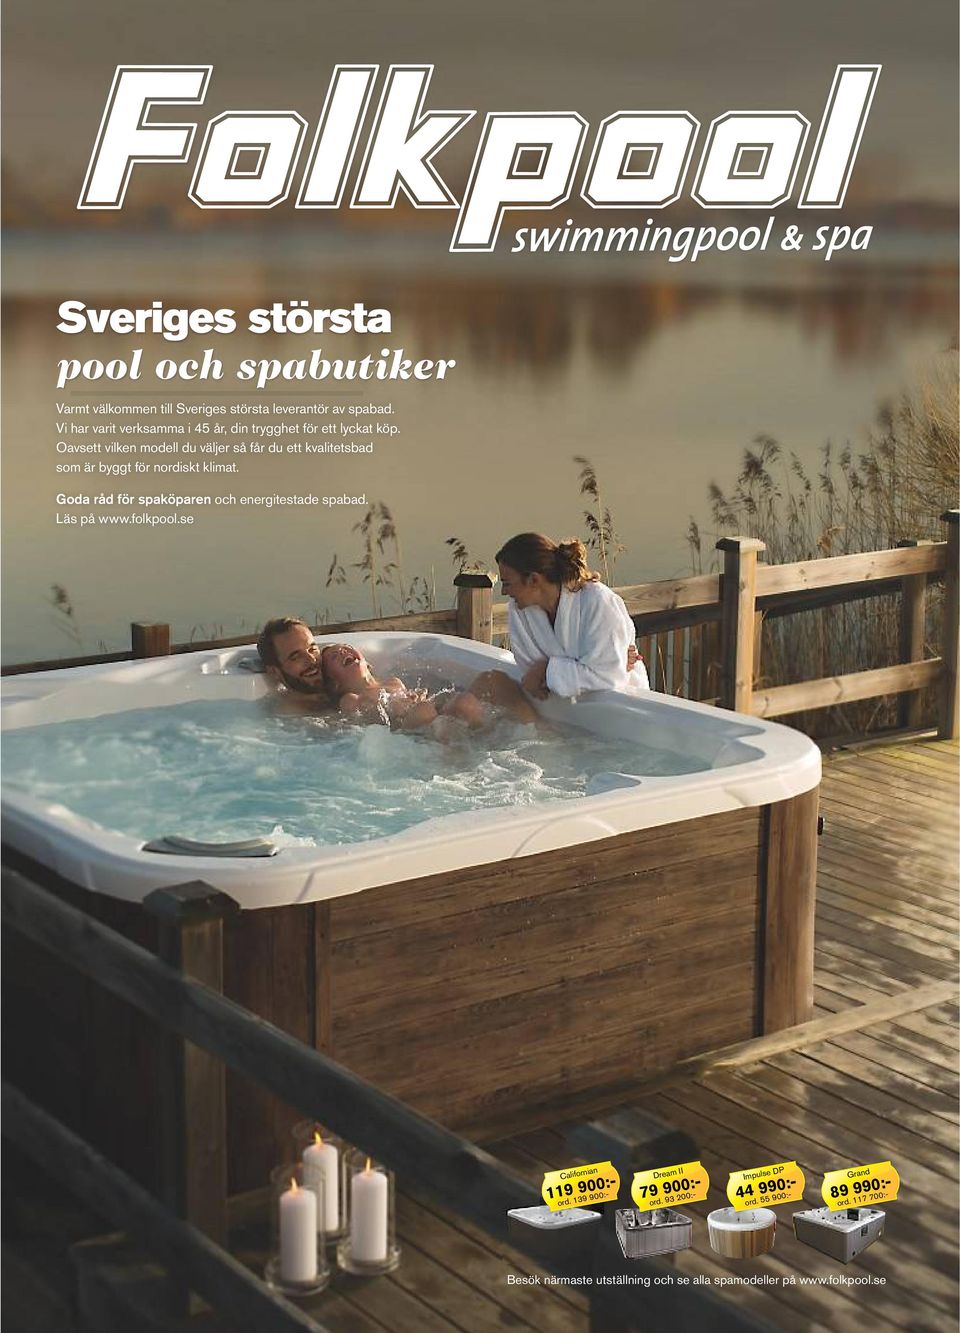 Oavsett vilken modell du väljer så får du ett kvalitetsbad som är byggt för nordiskt klimat.